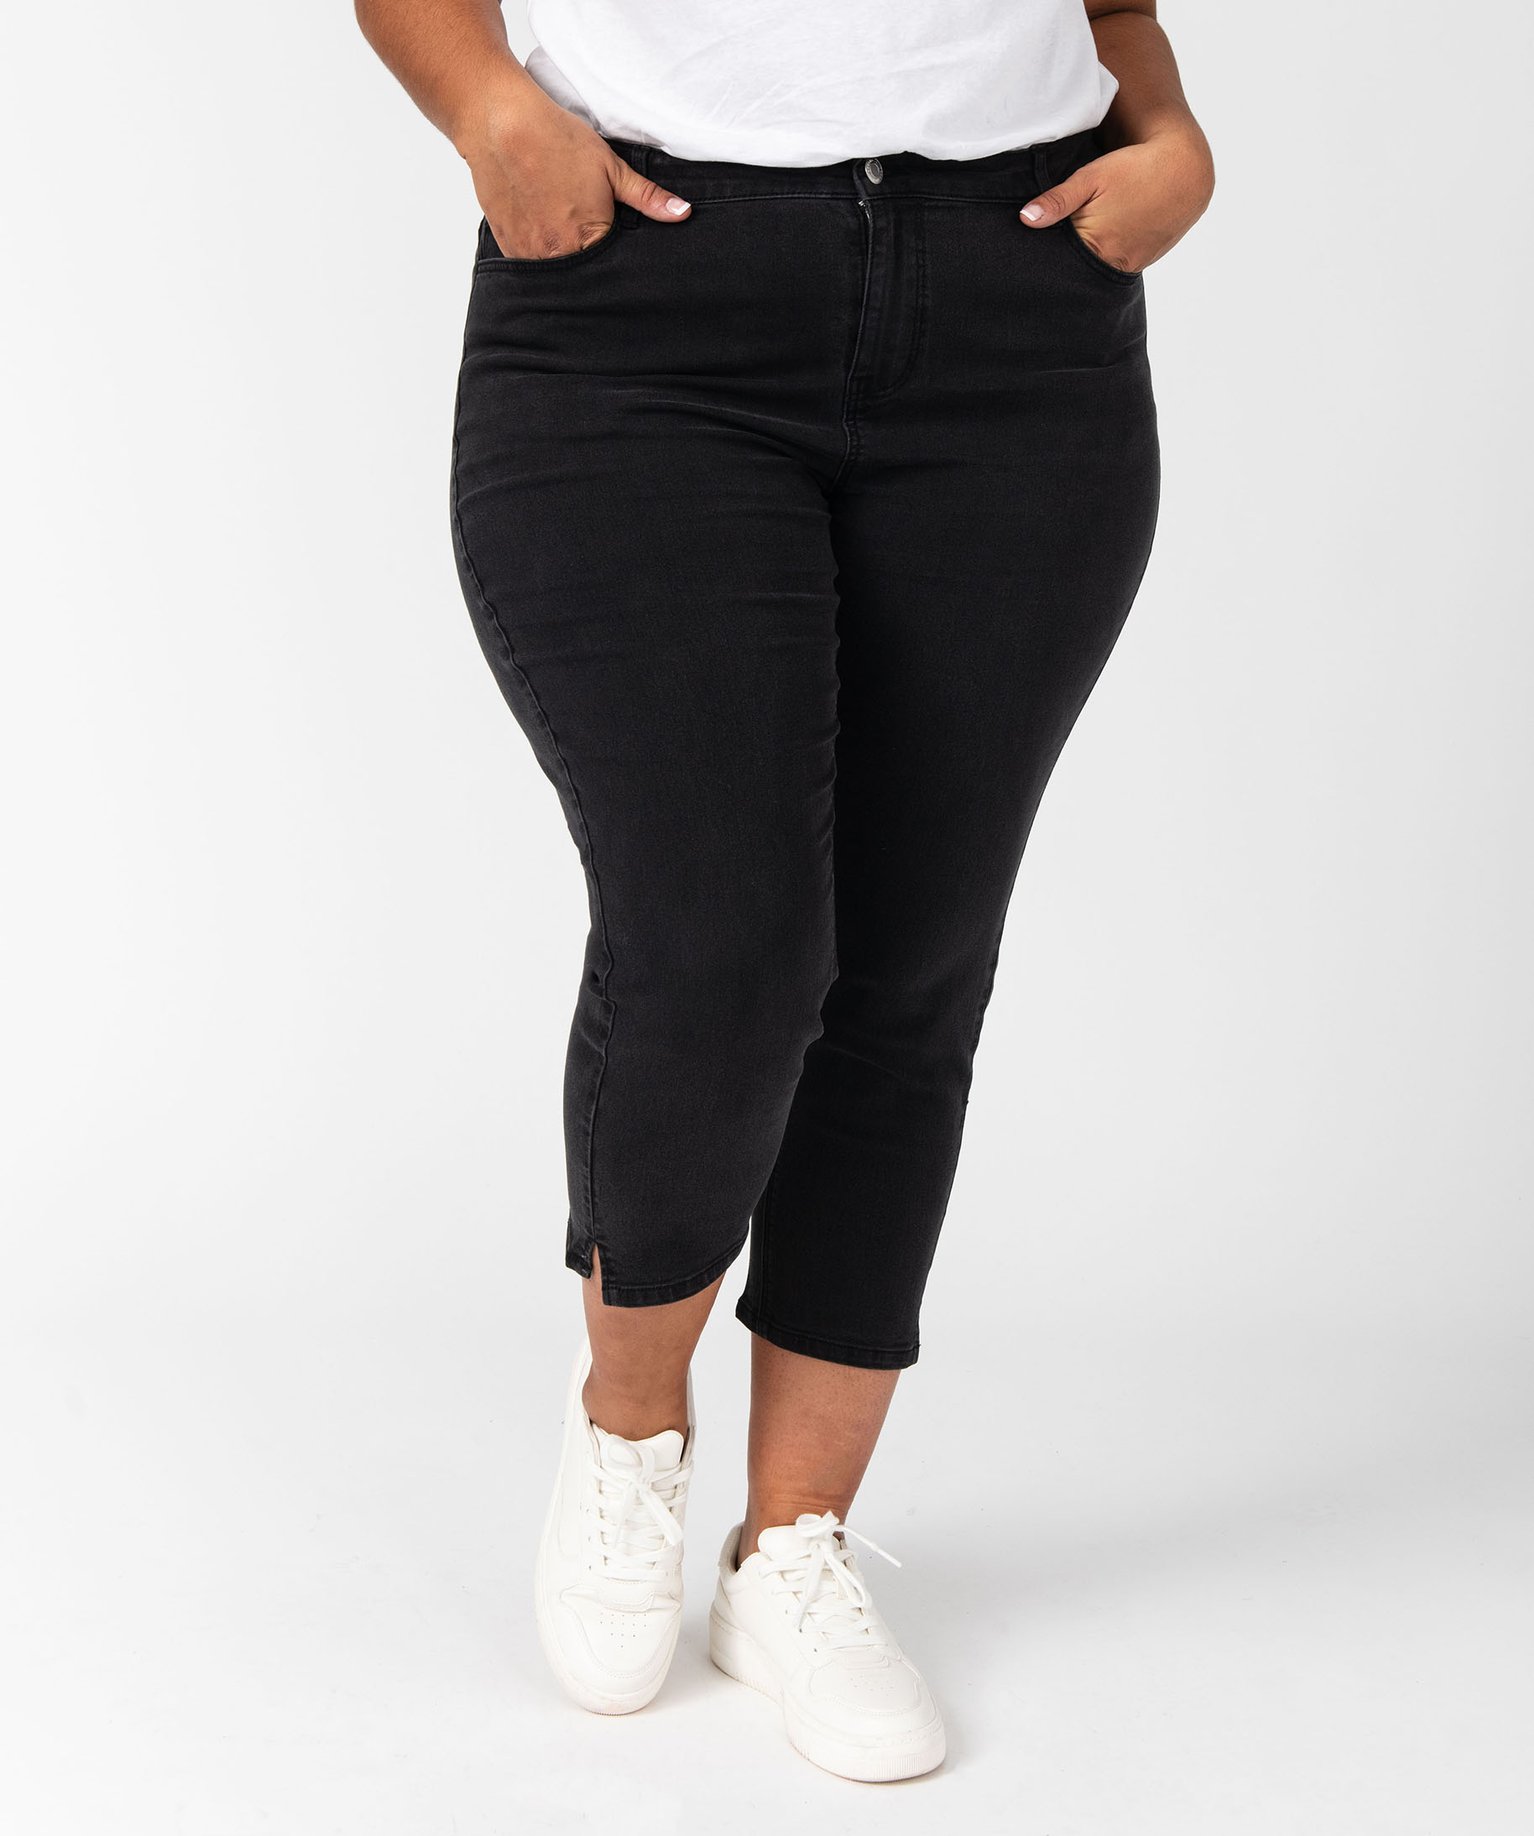 pantacourt en jean stretch coupe slim taille normale femme grande taille noir pantacourts